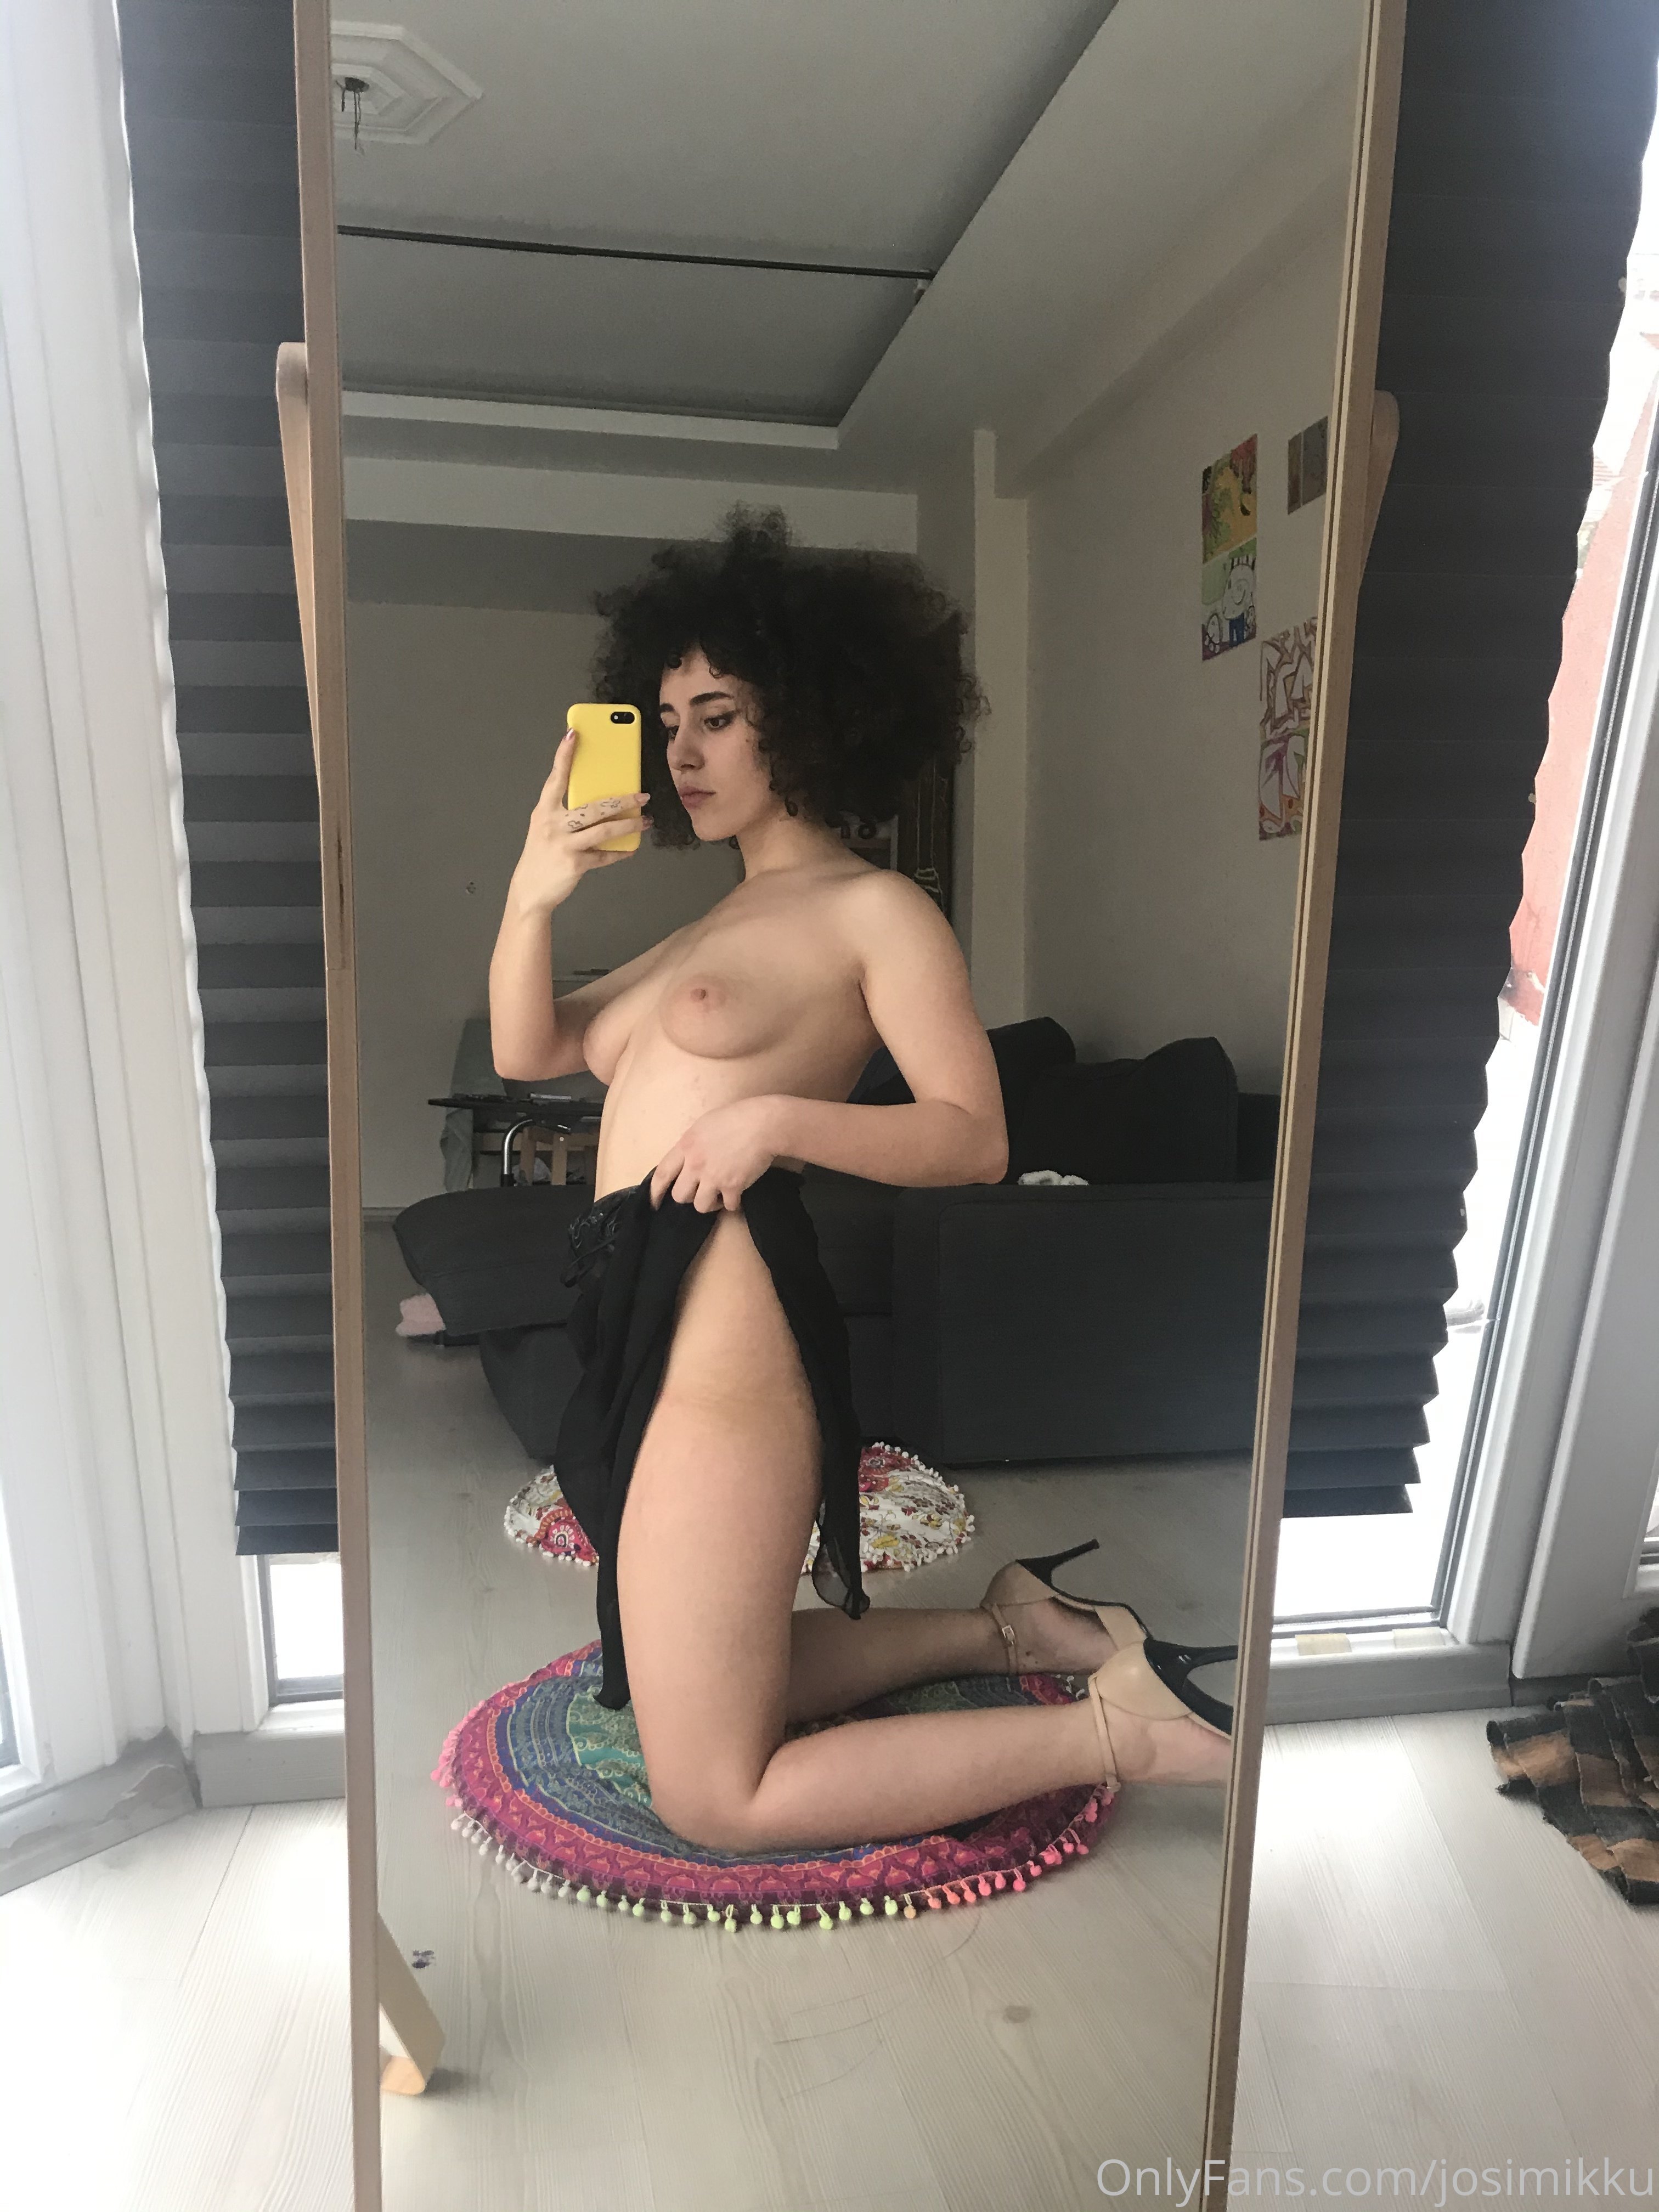 Babyjayne onlyfans nude gallery leaked 2021